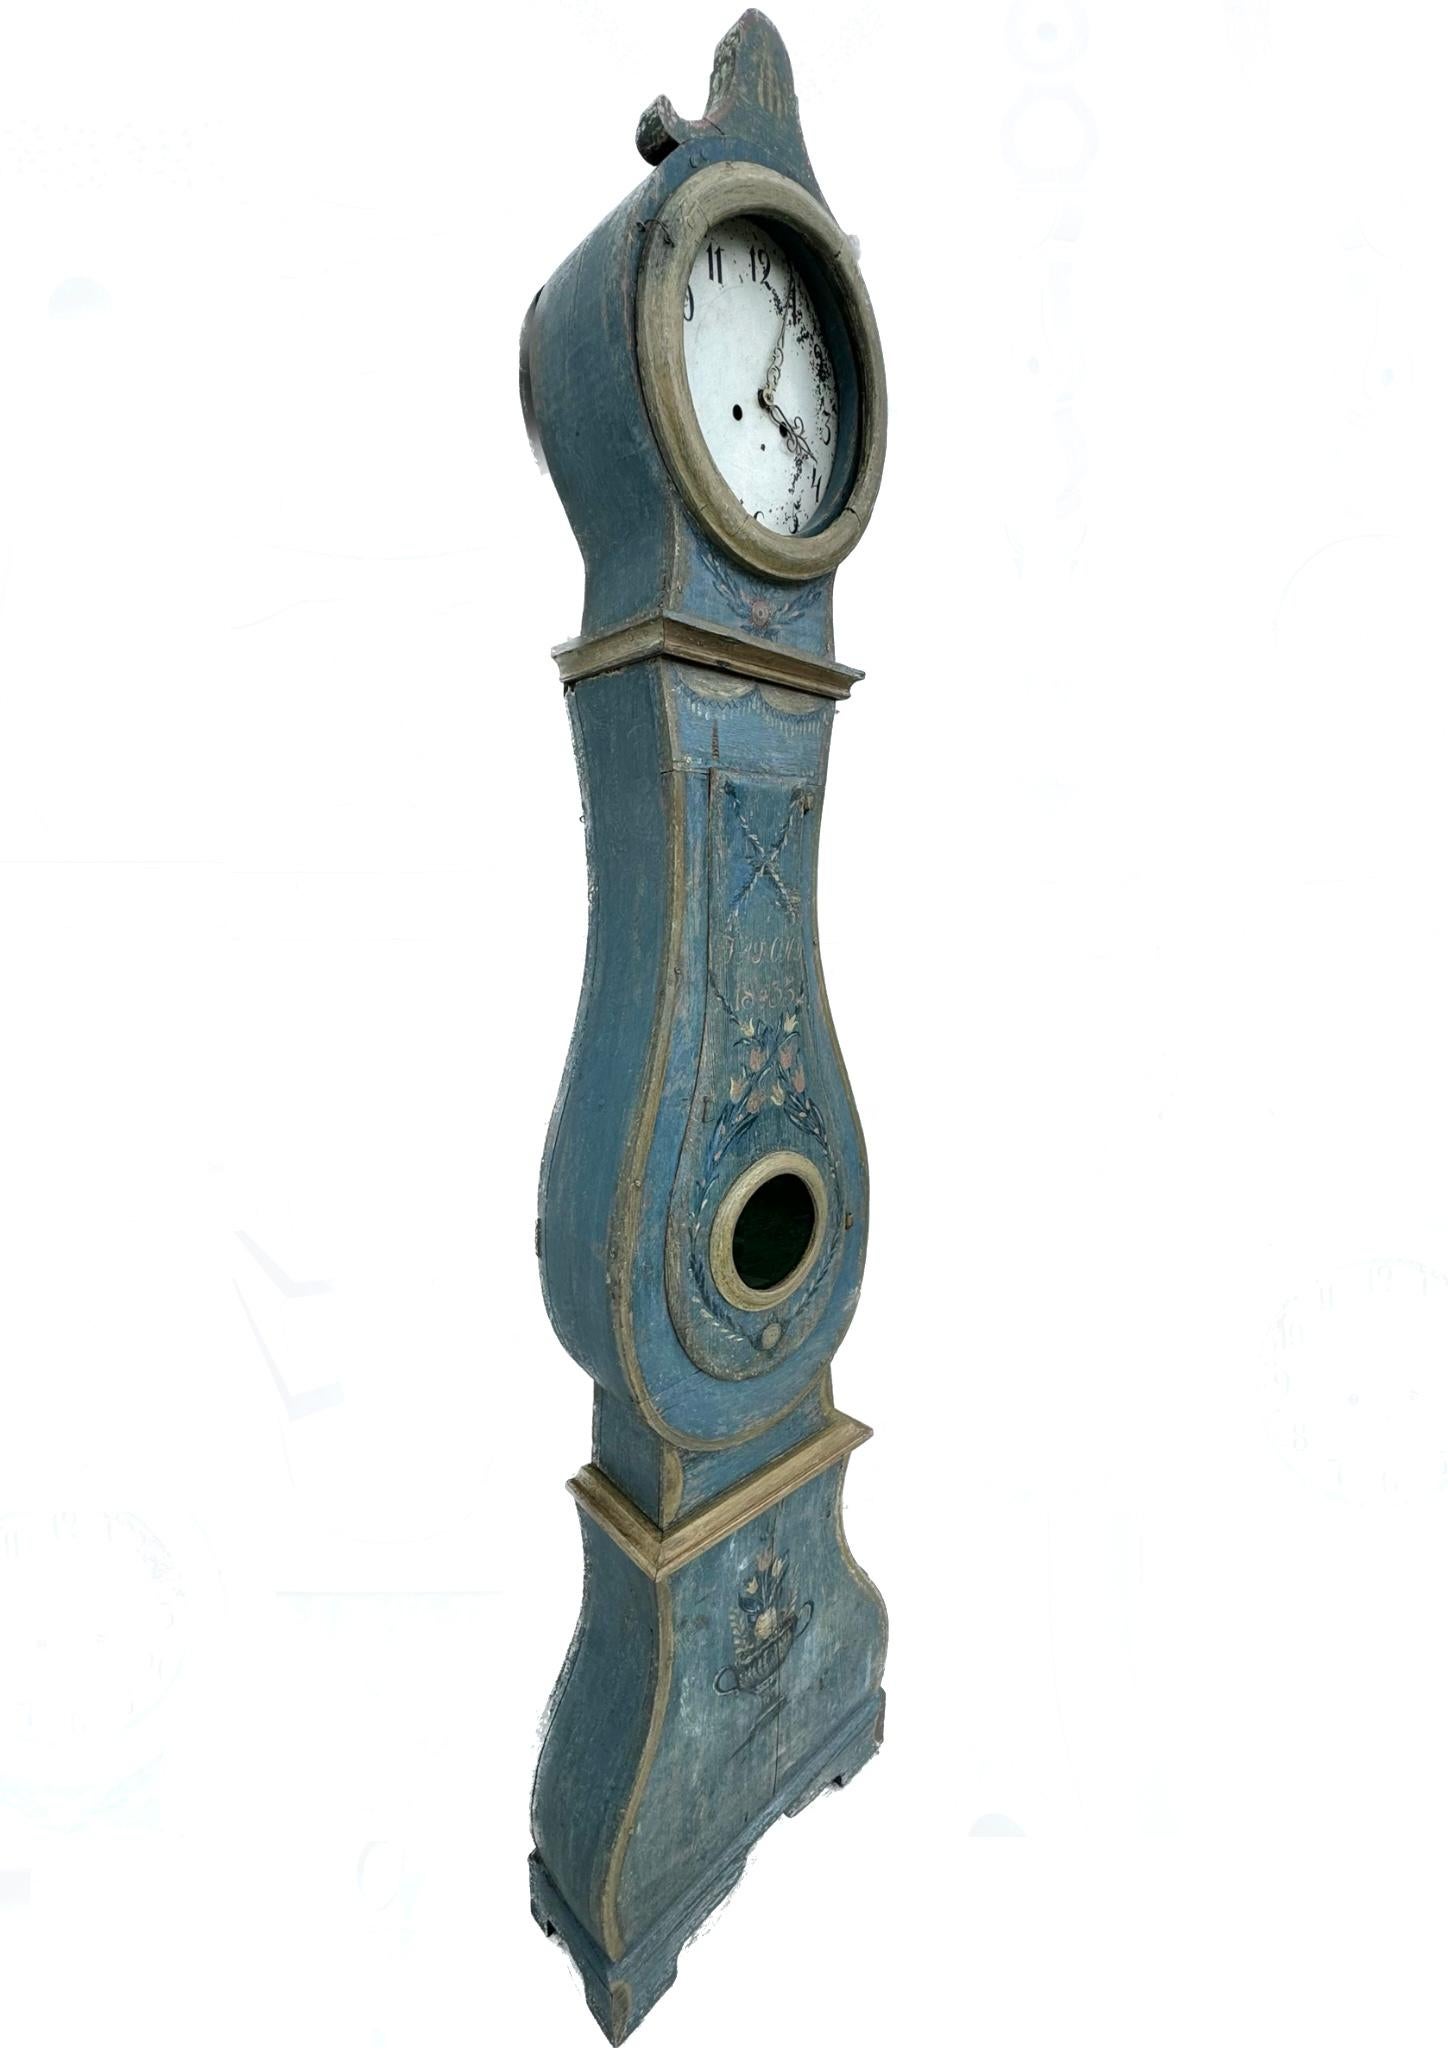 Suédois Horloge Mora suédoise gustavienne peinte de parquet du 19e siècle 